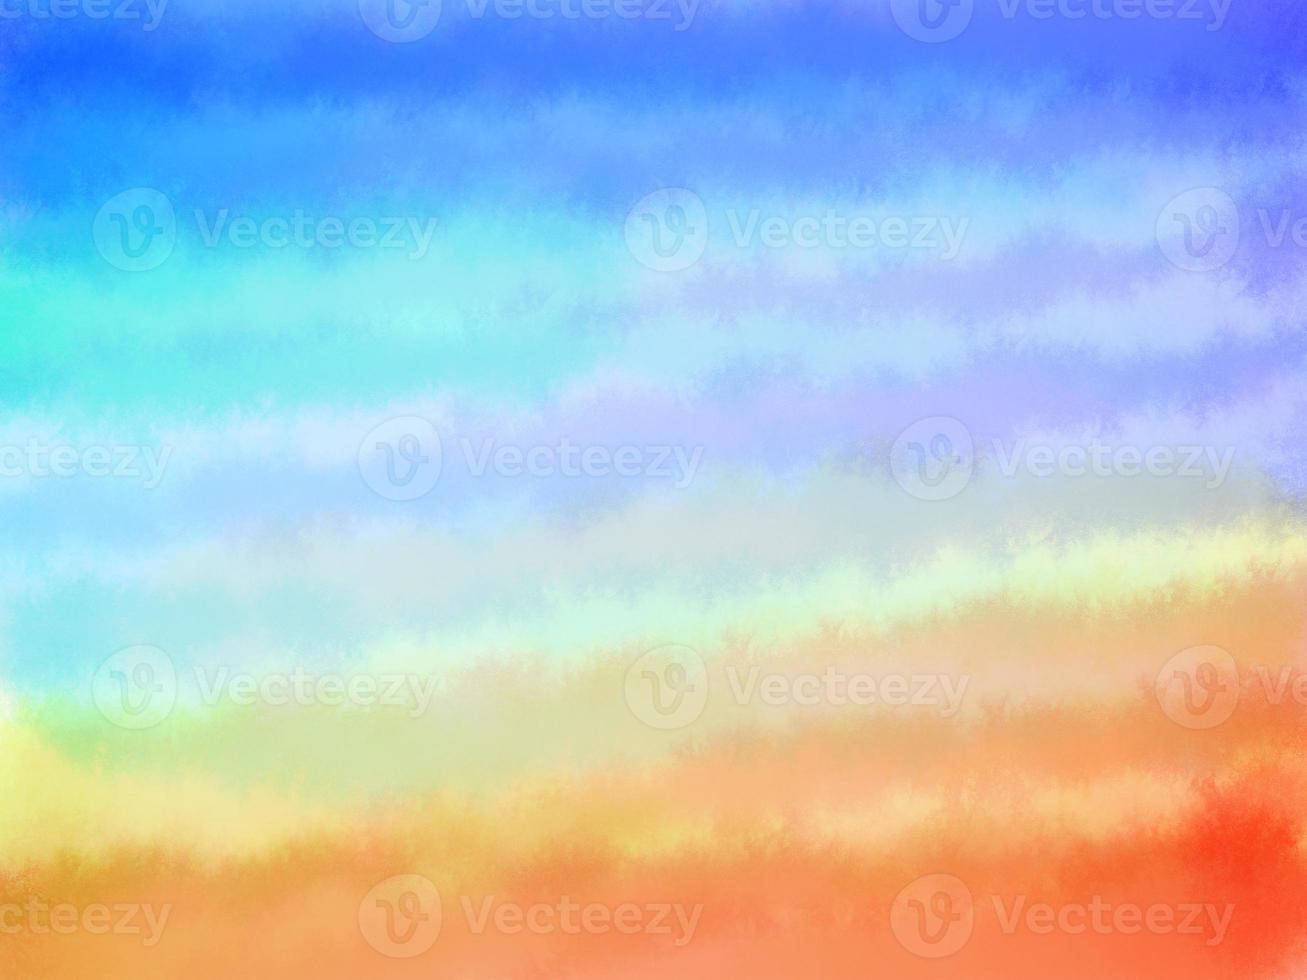 pared de fondo abstracto creada desde cero a través del proceso de diseño de varios pasos pintura degradada color rosa violeta rojo naranja amarillo azul sobre papel blanco, efecto texturizado, pintura al óleo, aplicación de colores foto